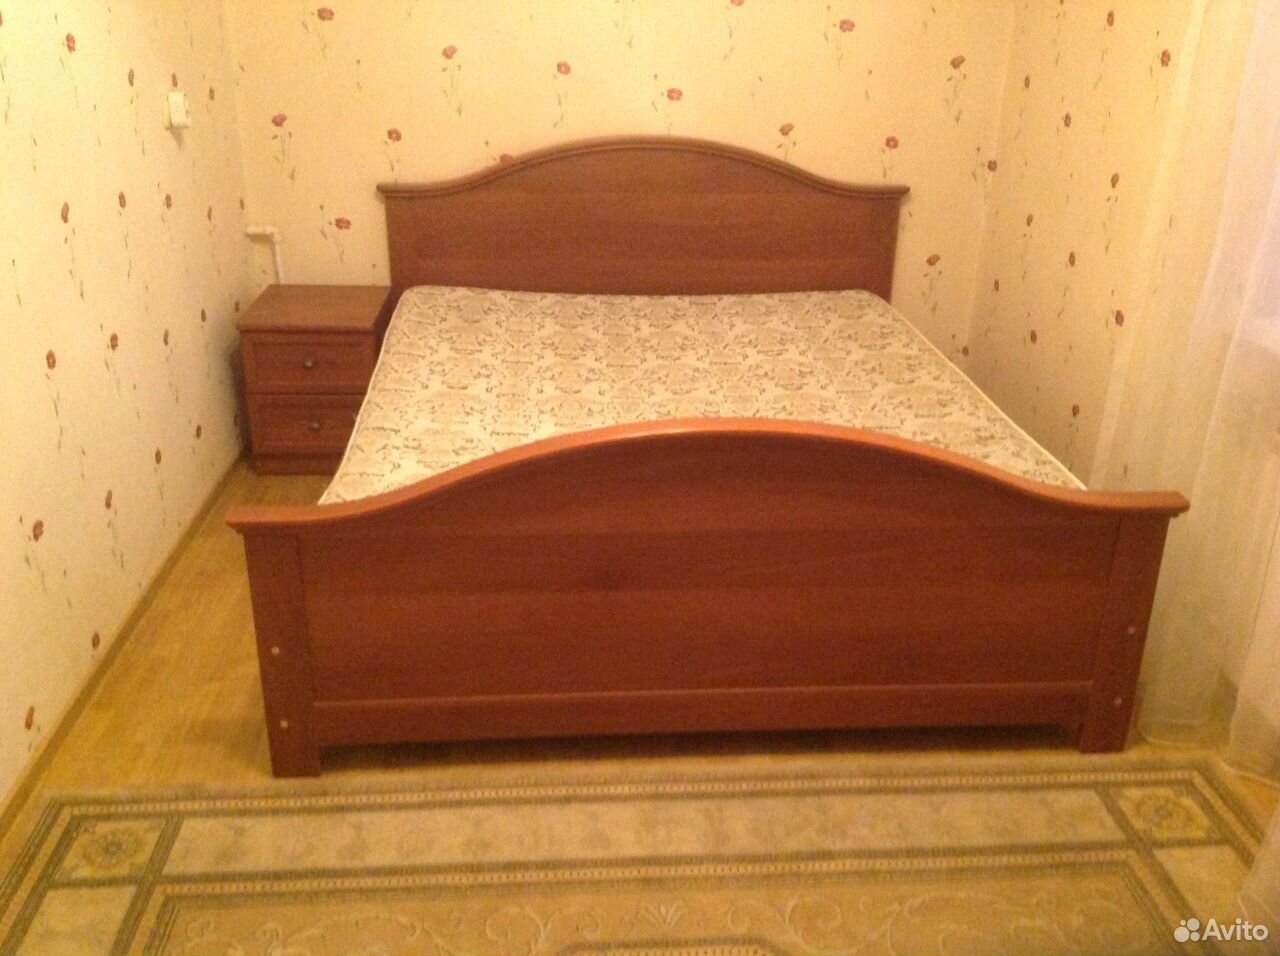 Авито мебель кровати б у. Бэушные кровати. Кровать 2х спальная Старая. БЭУШНАЯ кровать. 1 5 Спальная кровать старого образца.